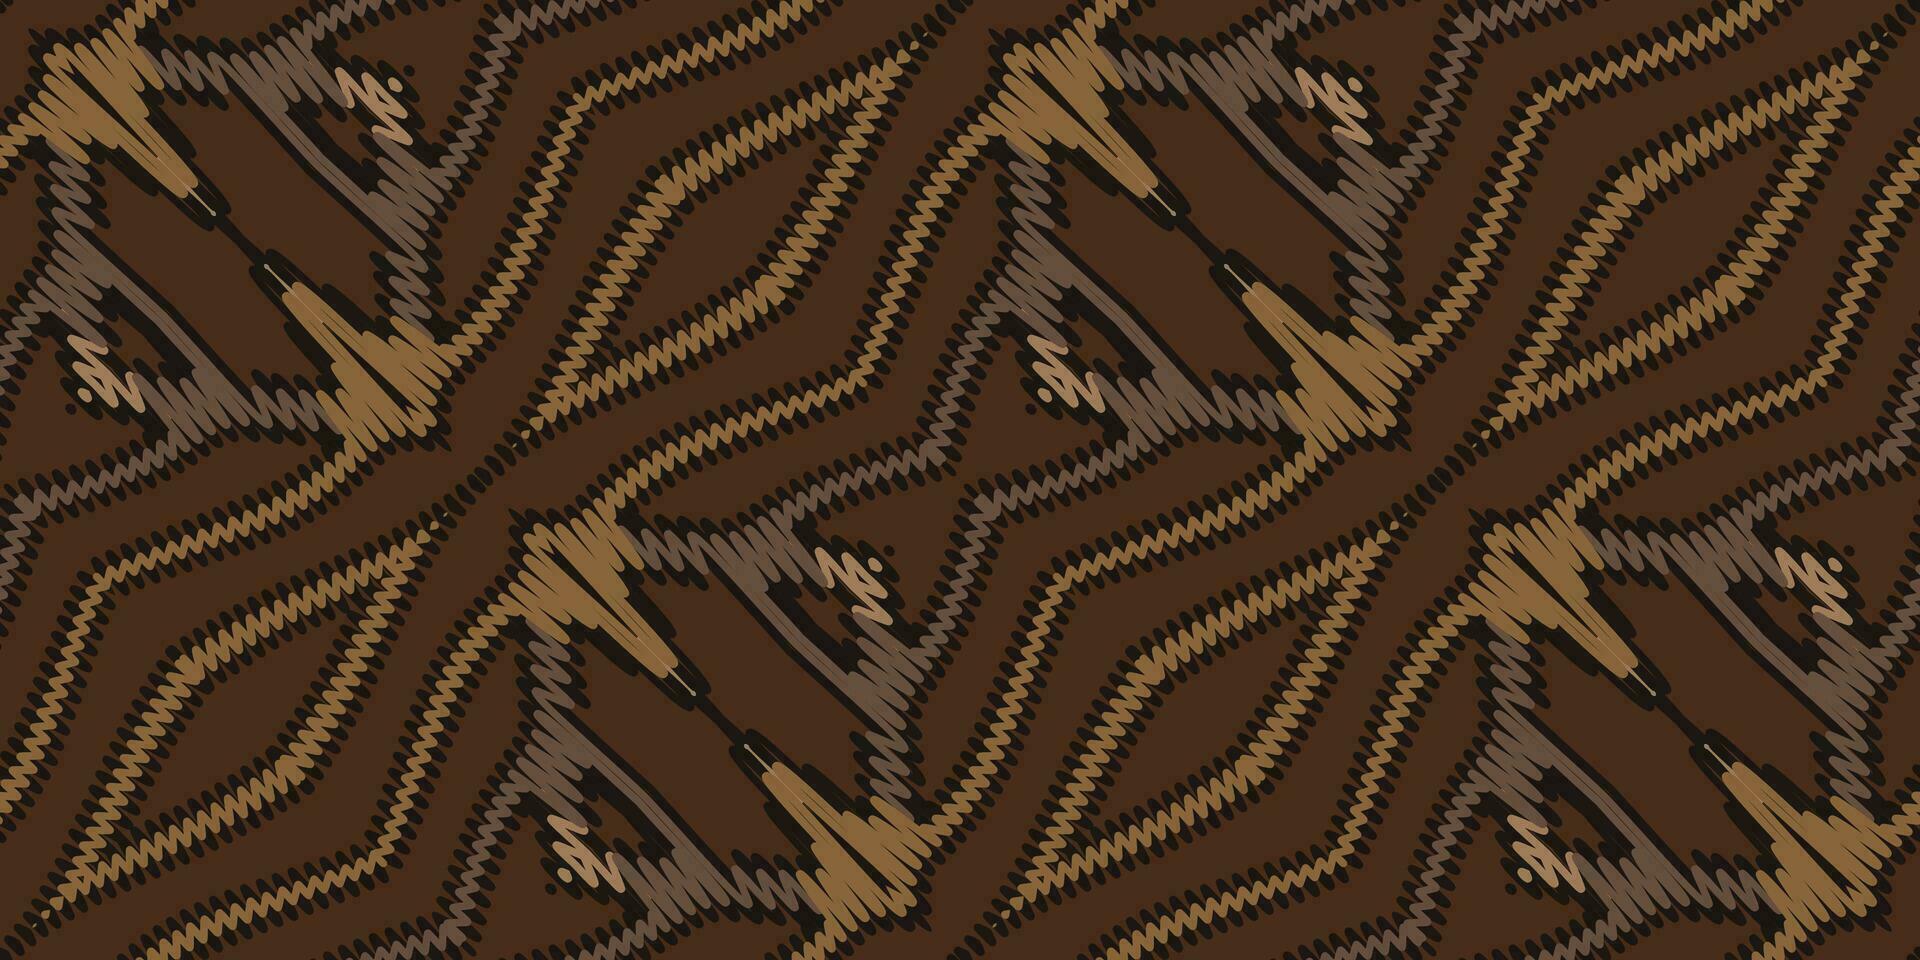 Navajo patroon naadloos mughal architectuur motief borduurwerk, ikat borduurwerk vector ontwerp voor afdrukken Egyptische patroon Tibetaans mandala bandana